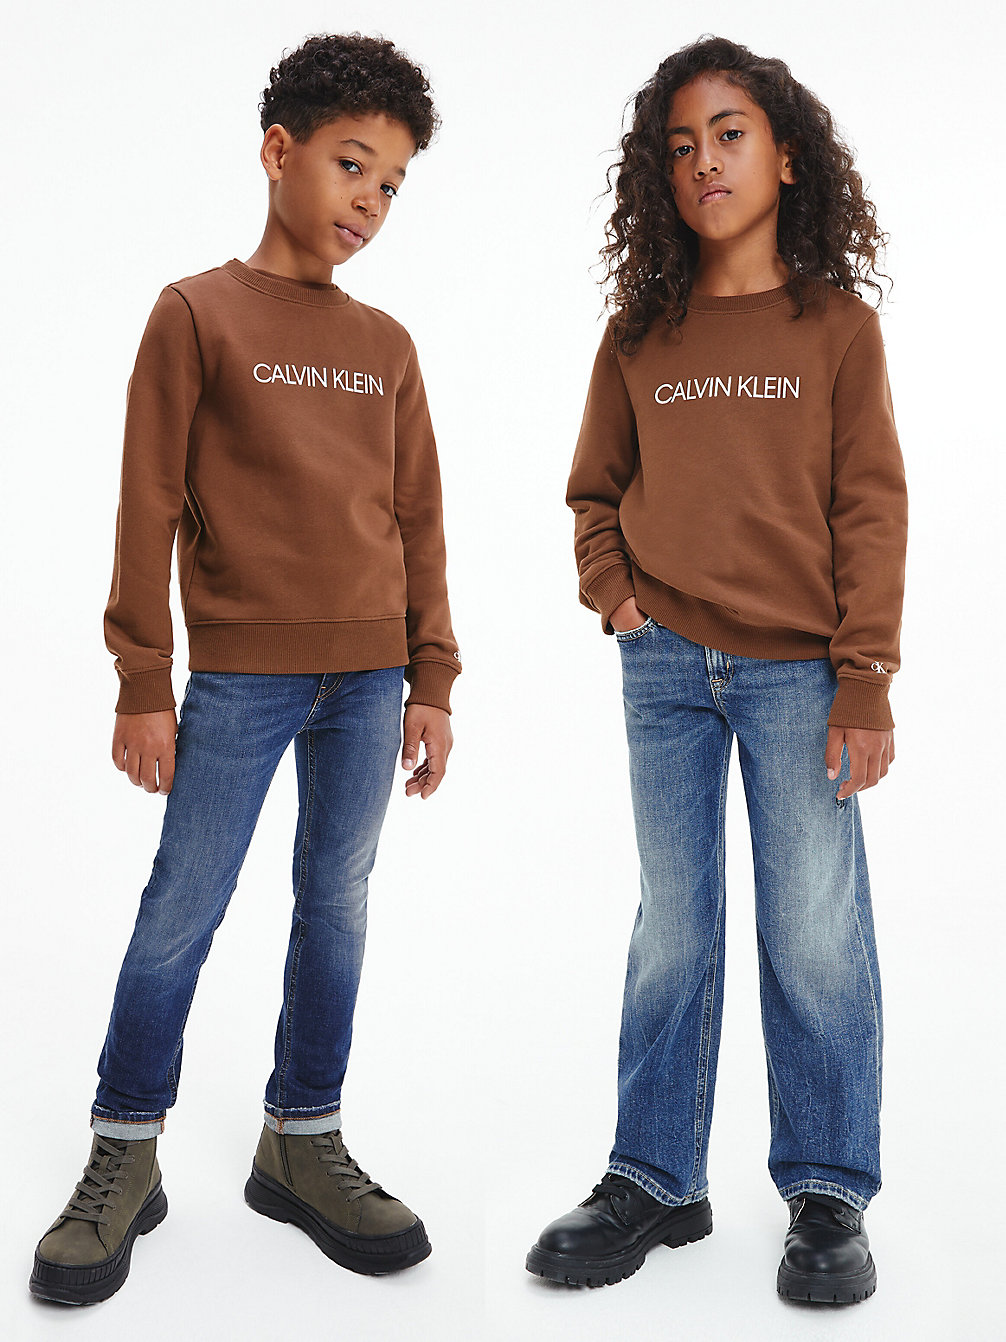 MILK CHOCOLATE Unisex Logo Sweatshirt undefined kids unisex Calvin Klein